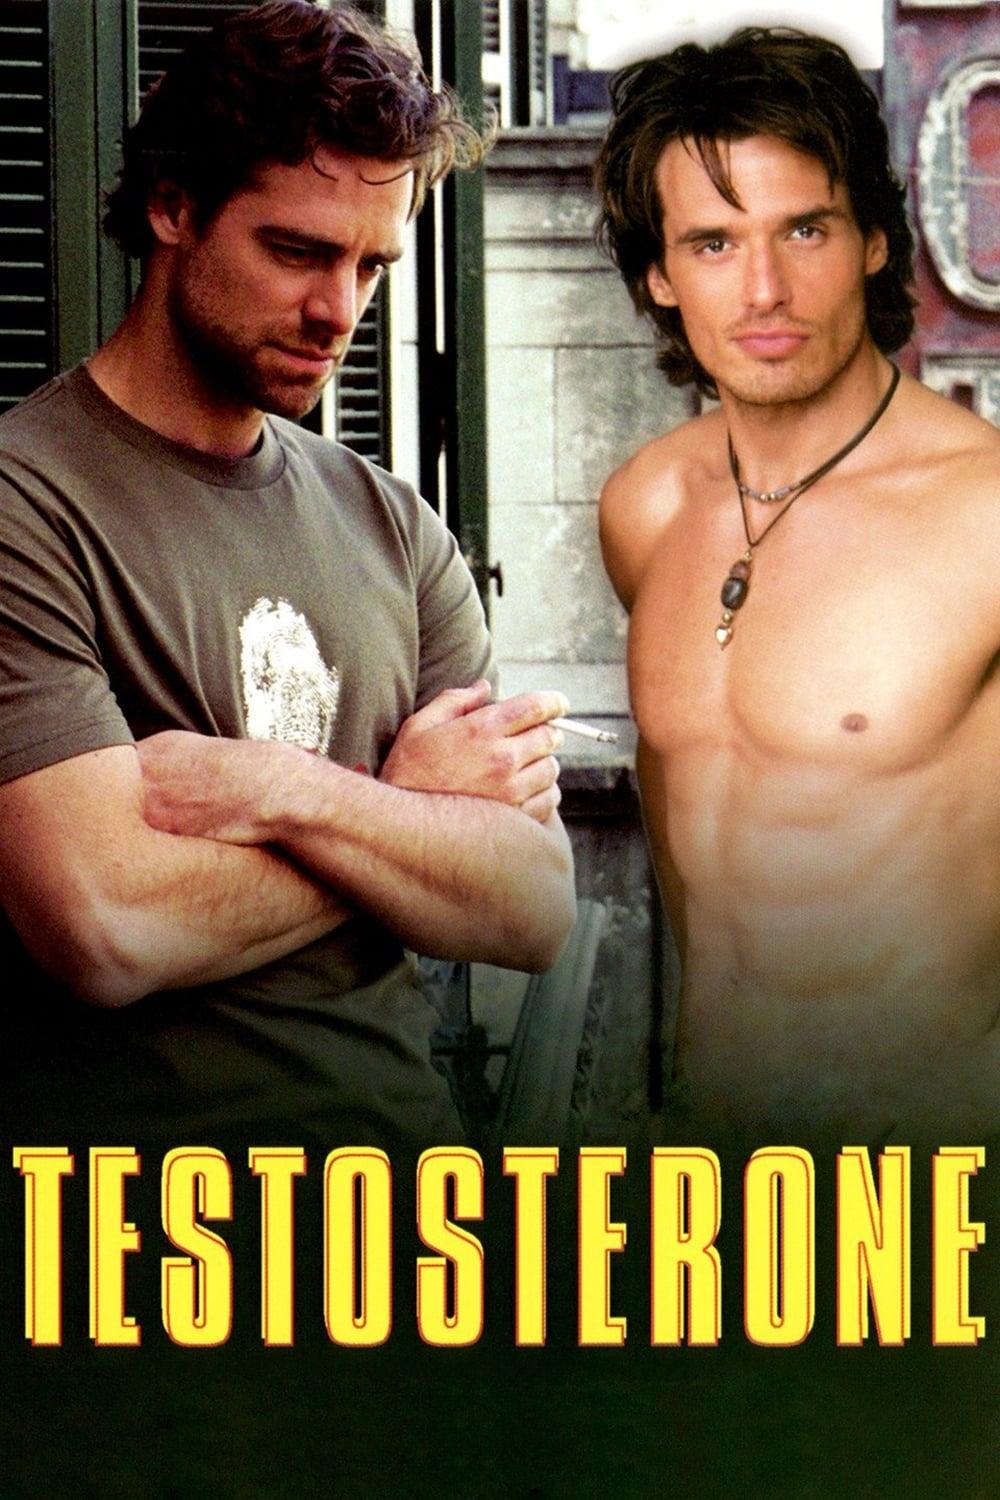 Testosteron poster